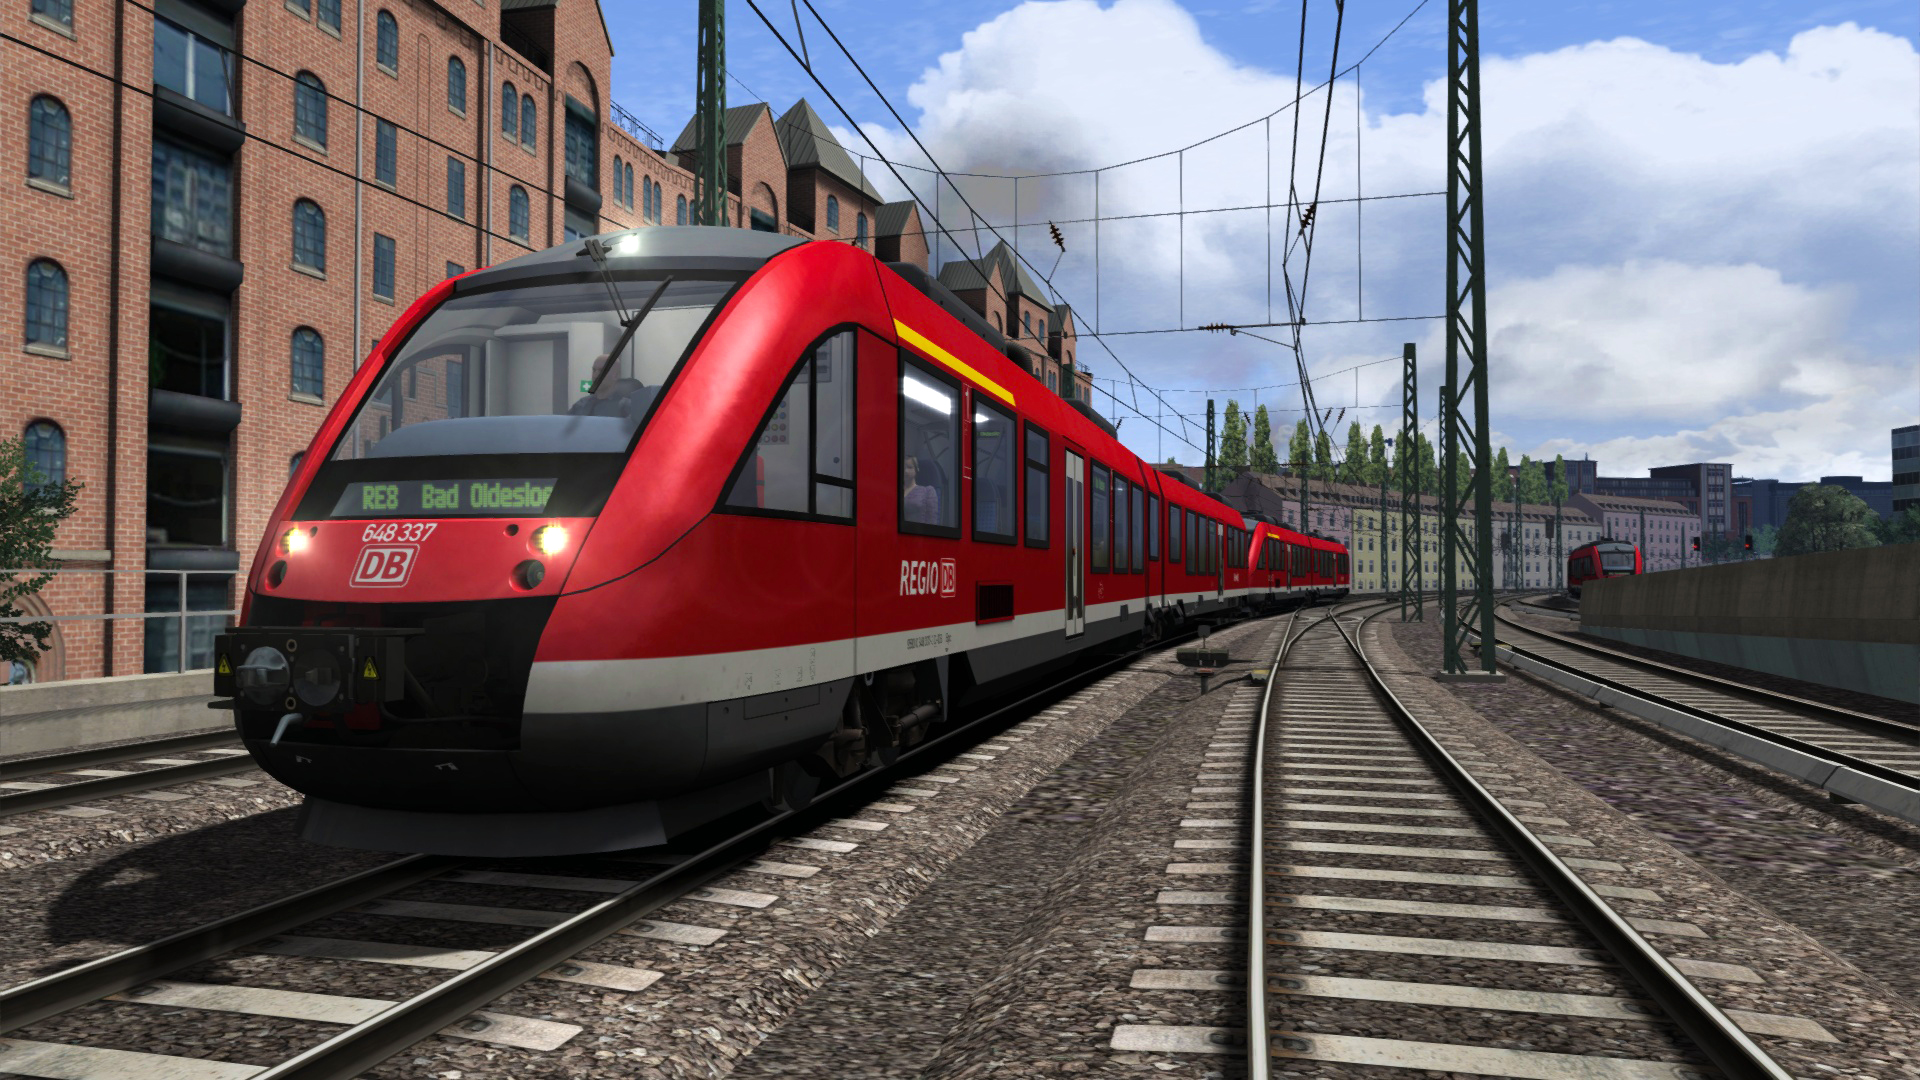 [$ 0.43] Train Simulator Classic - DB BR 648 Loco Add-On DLC Steam CD Key